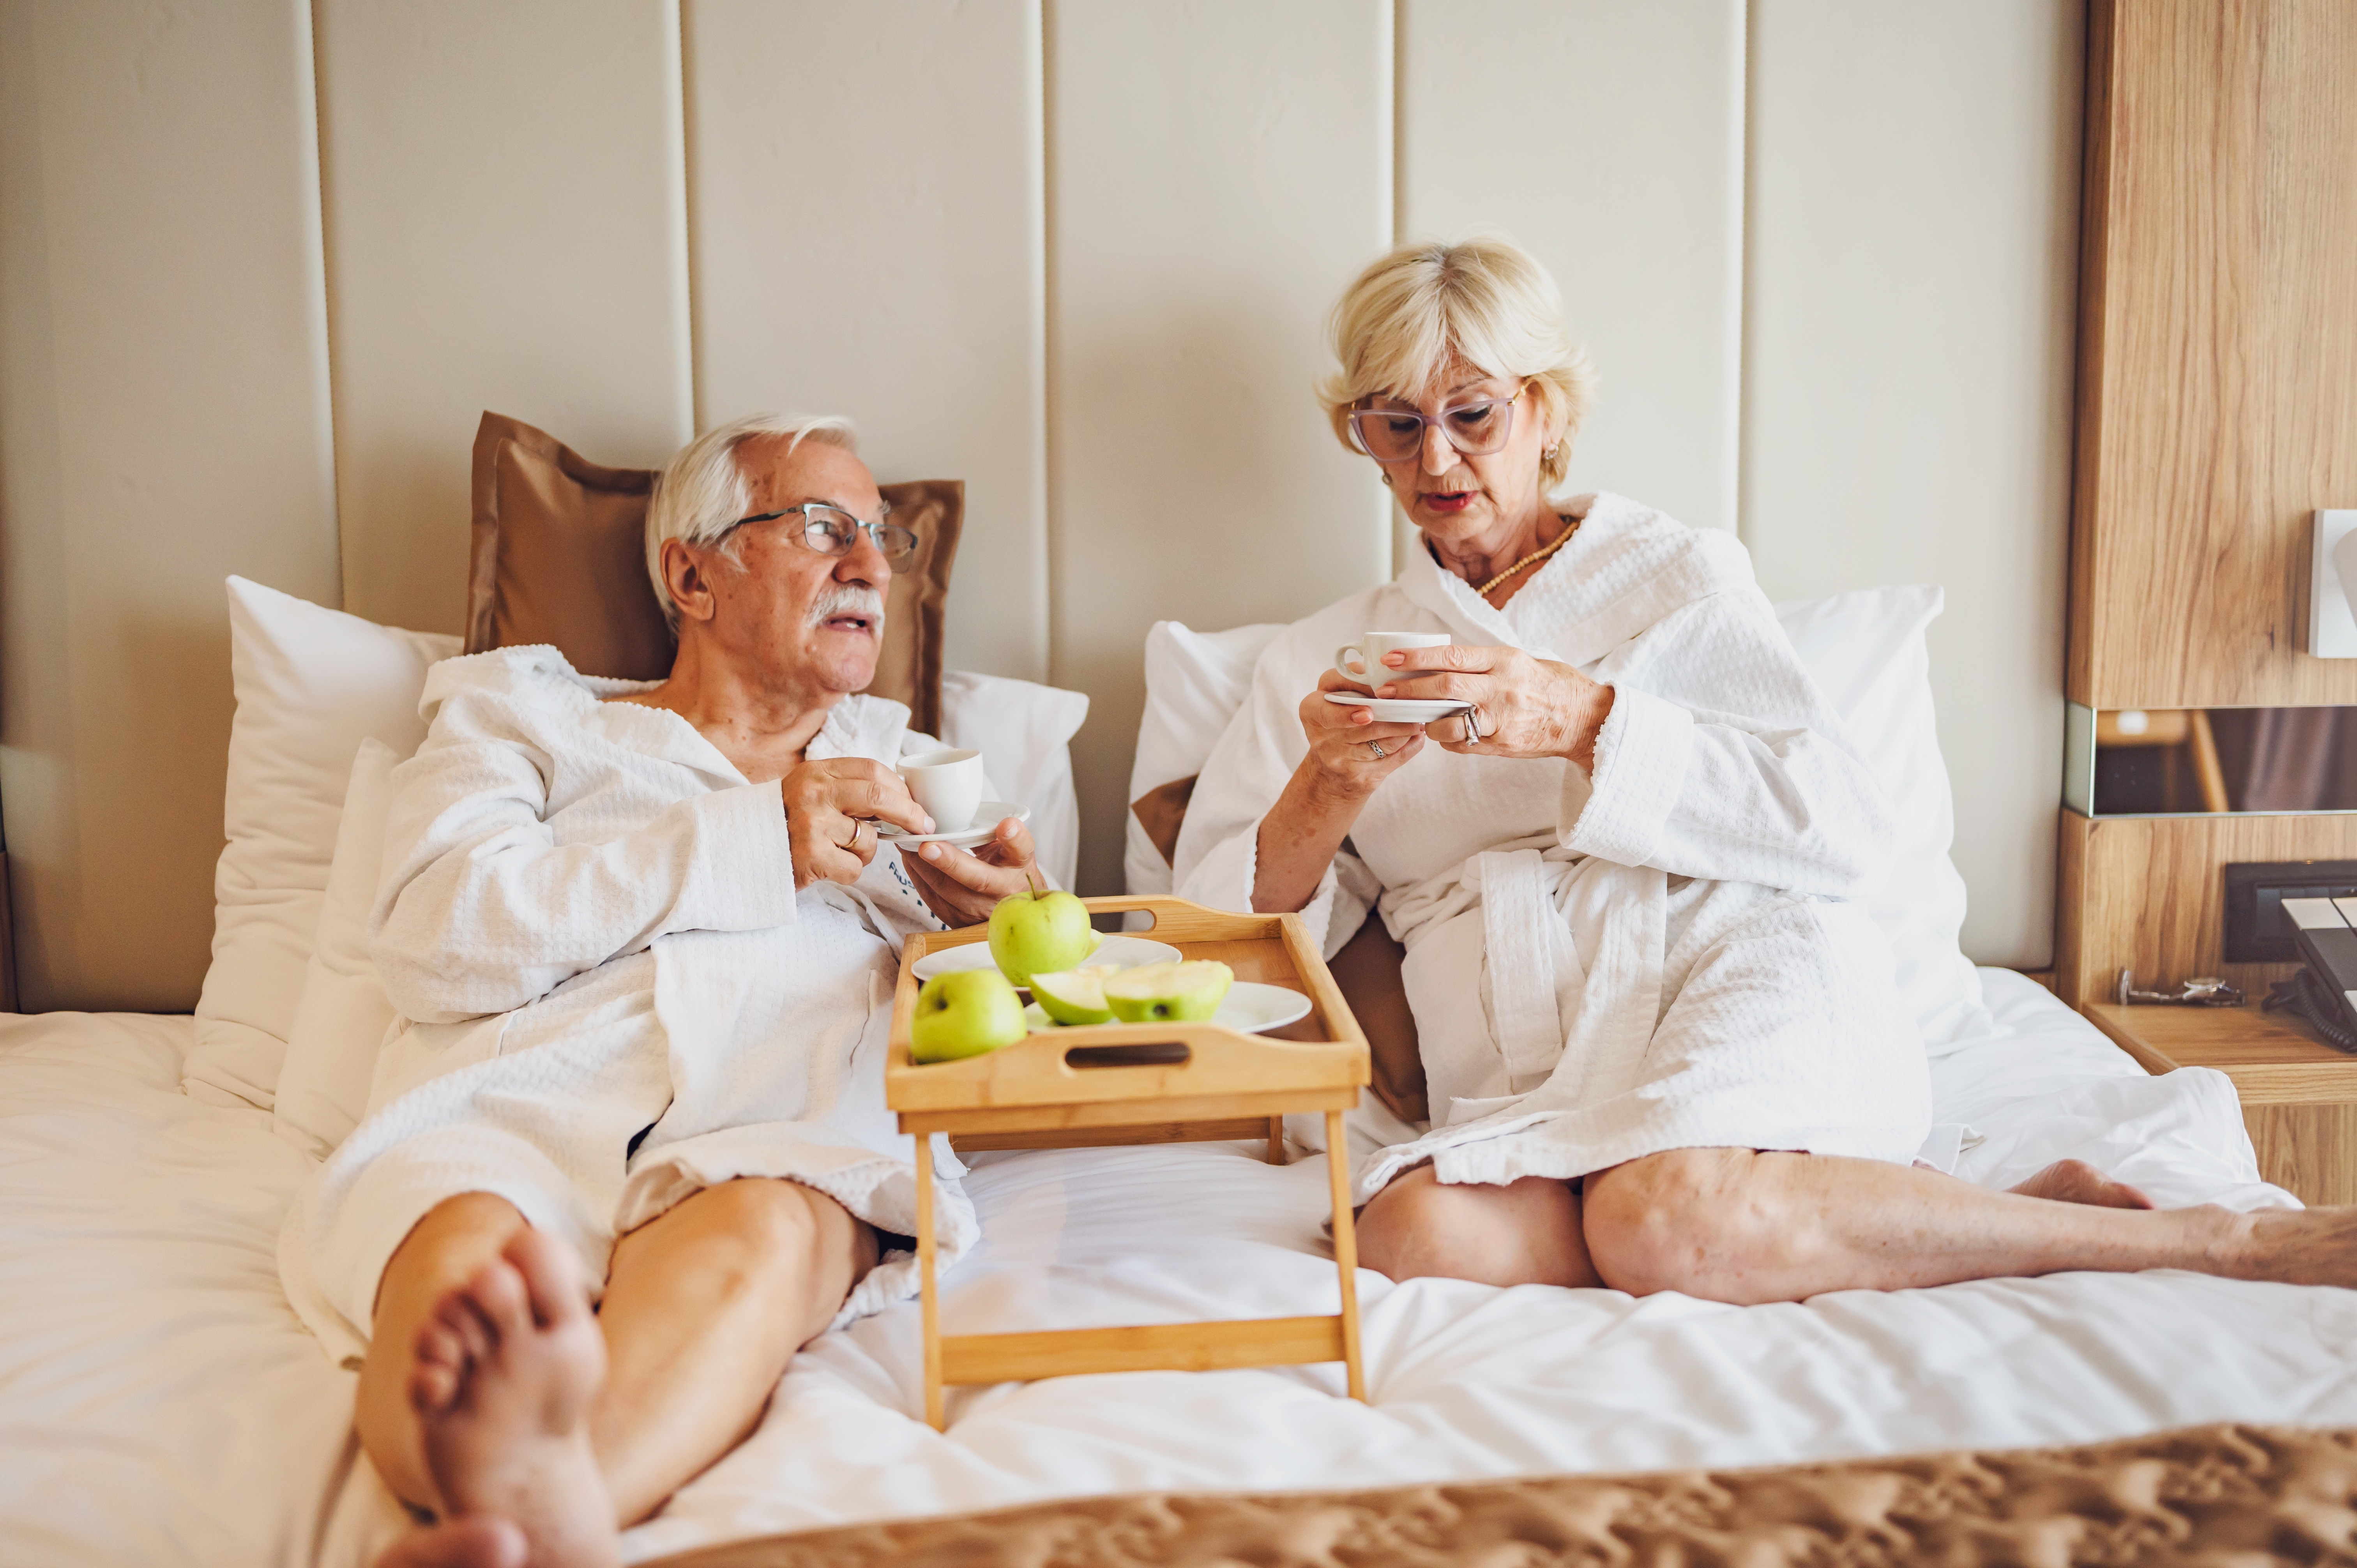 Un couple de personnes âgées buvant du café dans une chambre d'hôtel | Source : Shutterstock